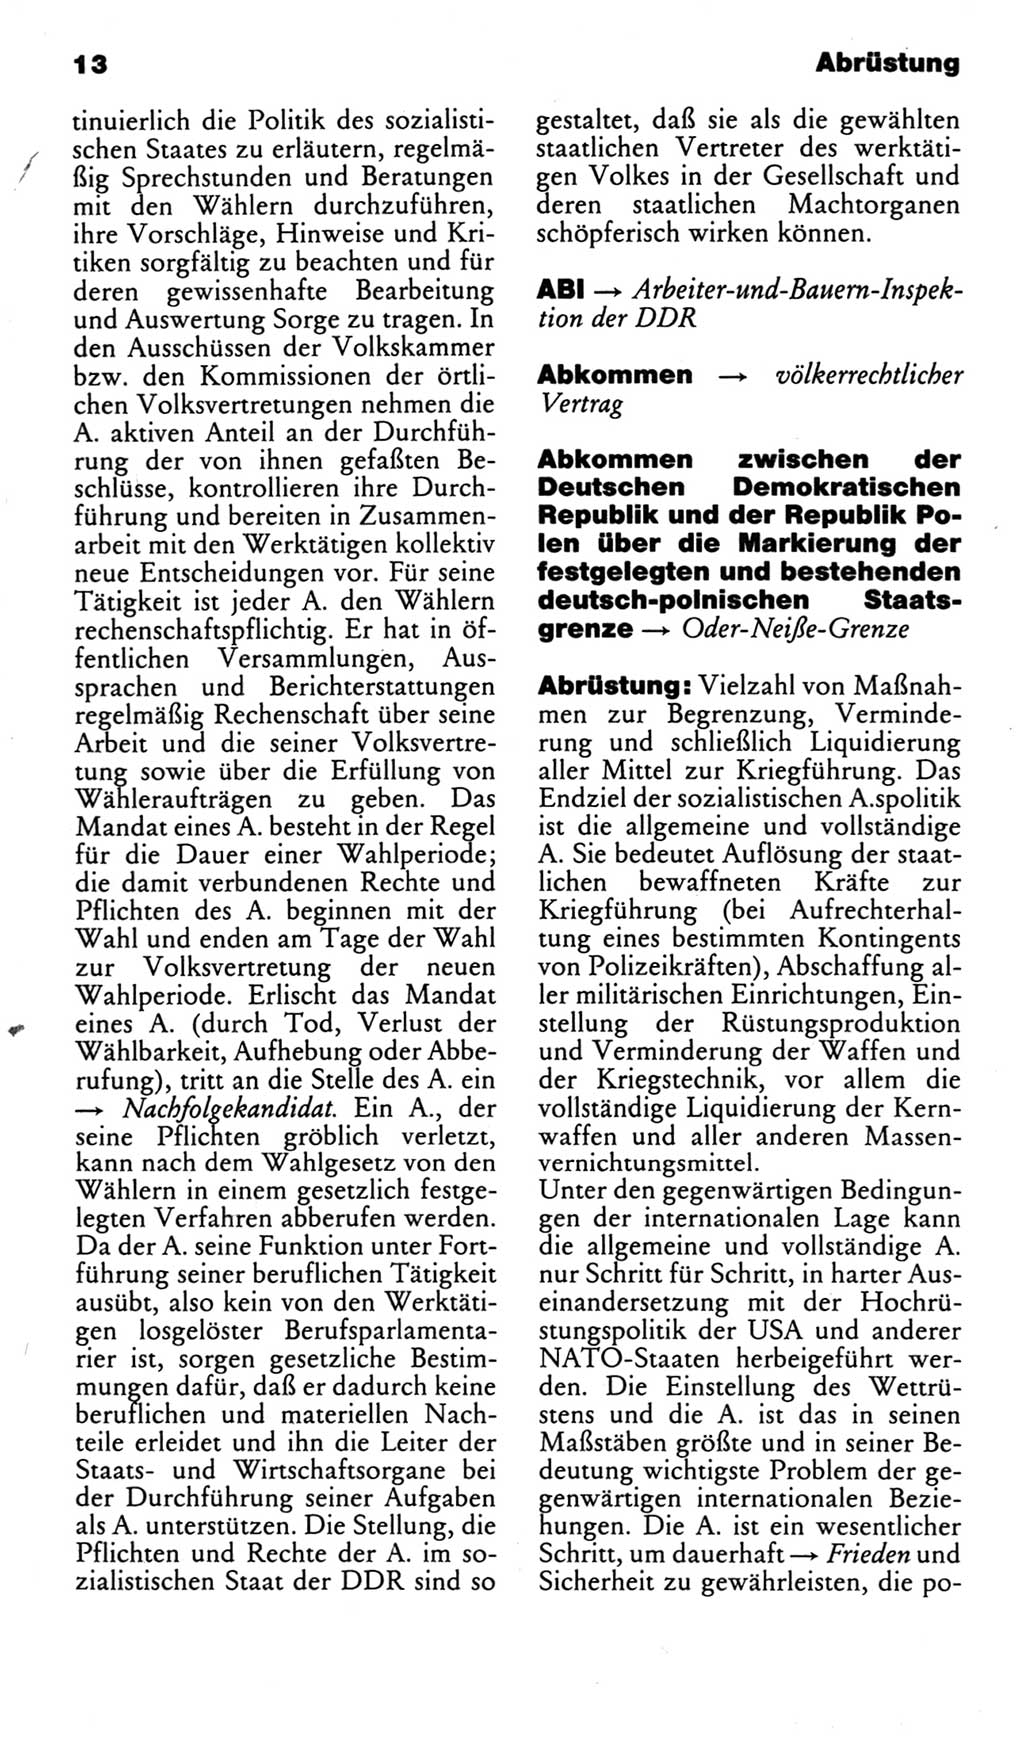 Kleines politisches Wörterbuch [Deutsche Demokratische Republik (DDR)] 1985, Seite 13 (Kl. pol. Wb. DDR 1985, S. 13)